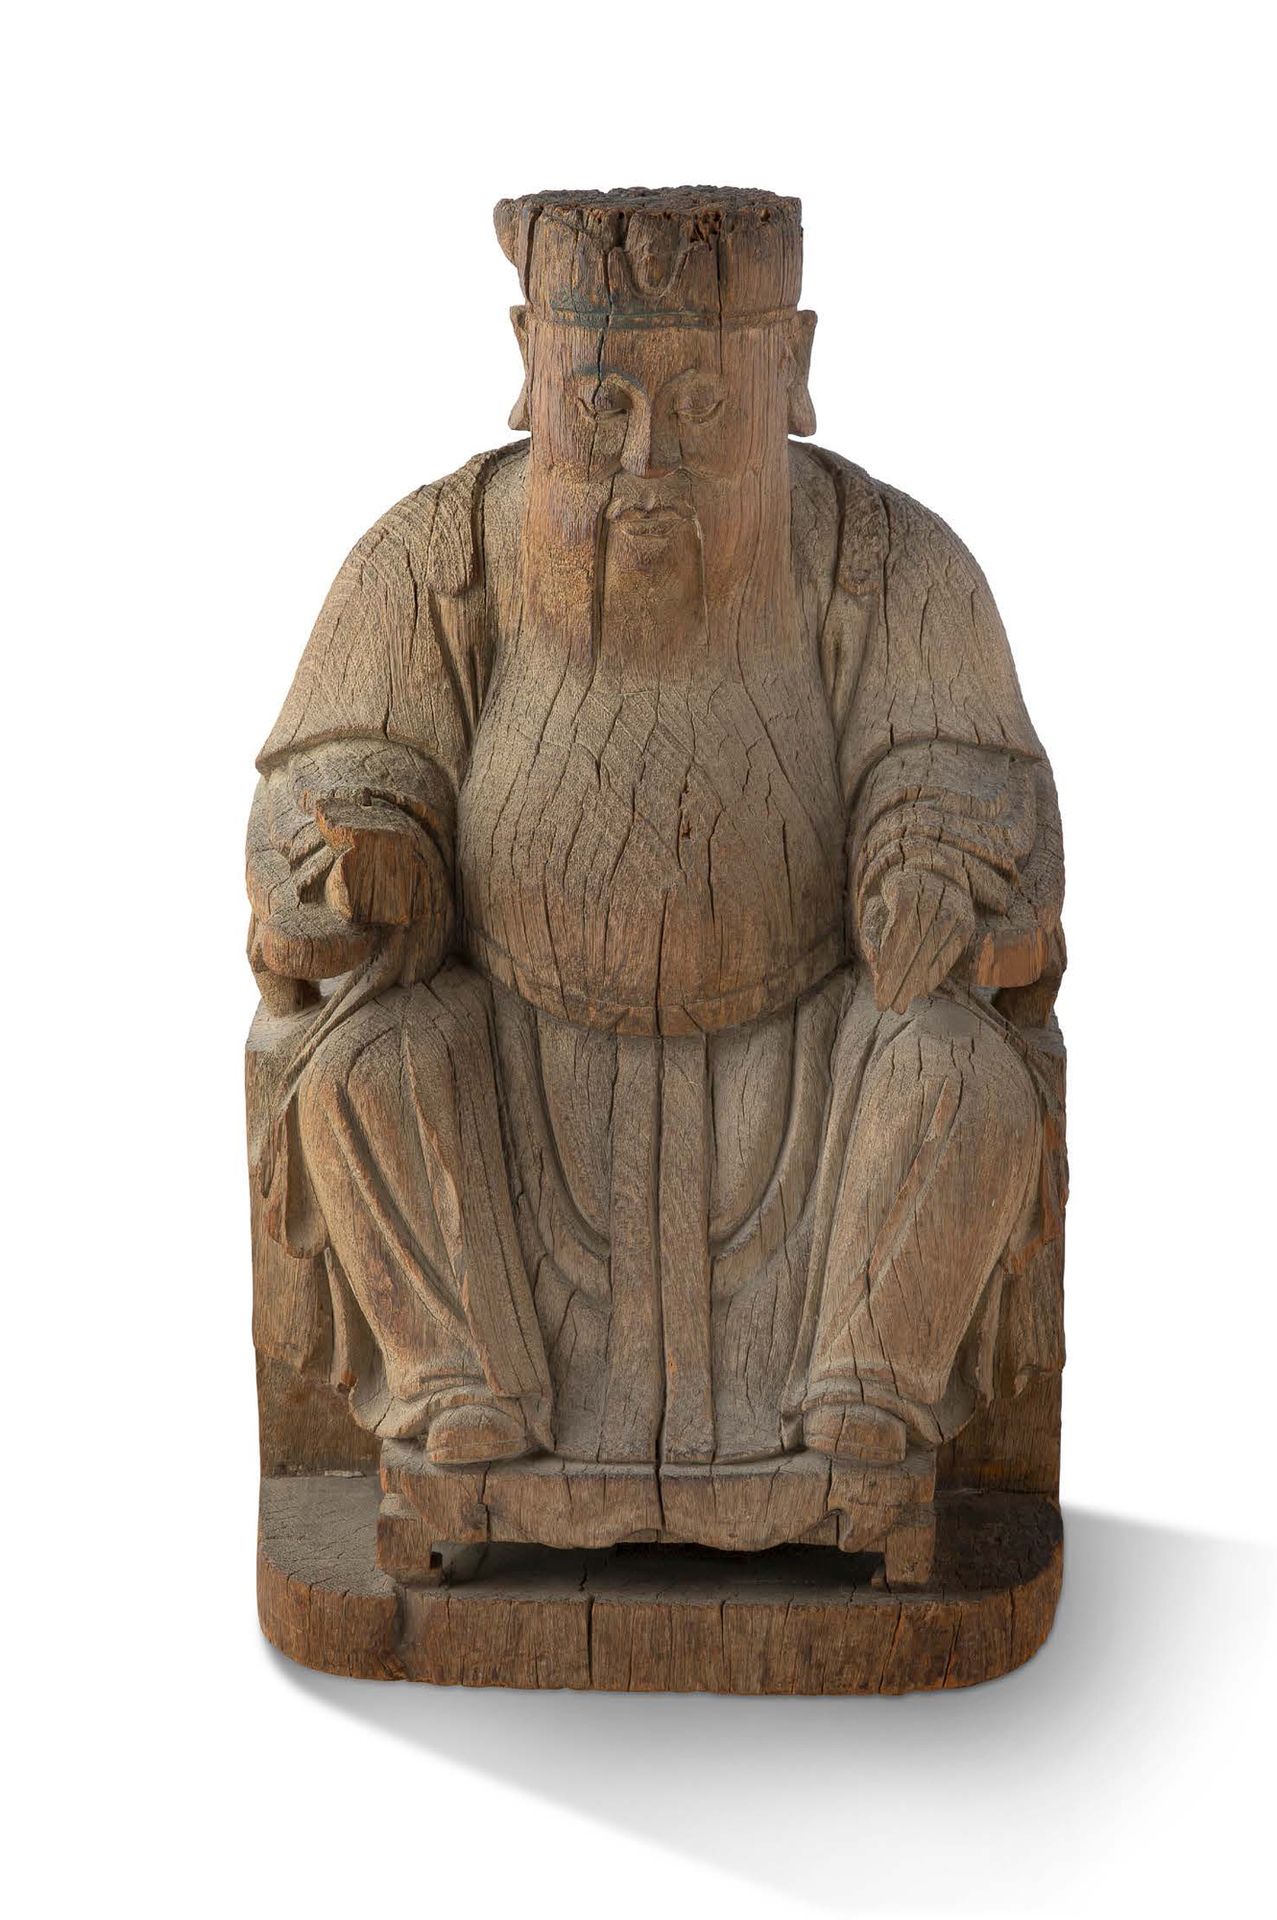 CHINE DYNASTIE QING, XIXe SIÈCLE 中国 清 19世纪
大型木雕，宝座上的权贵